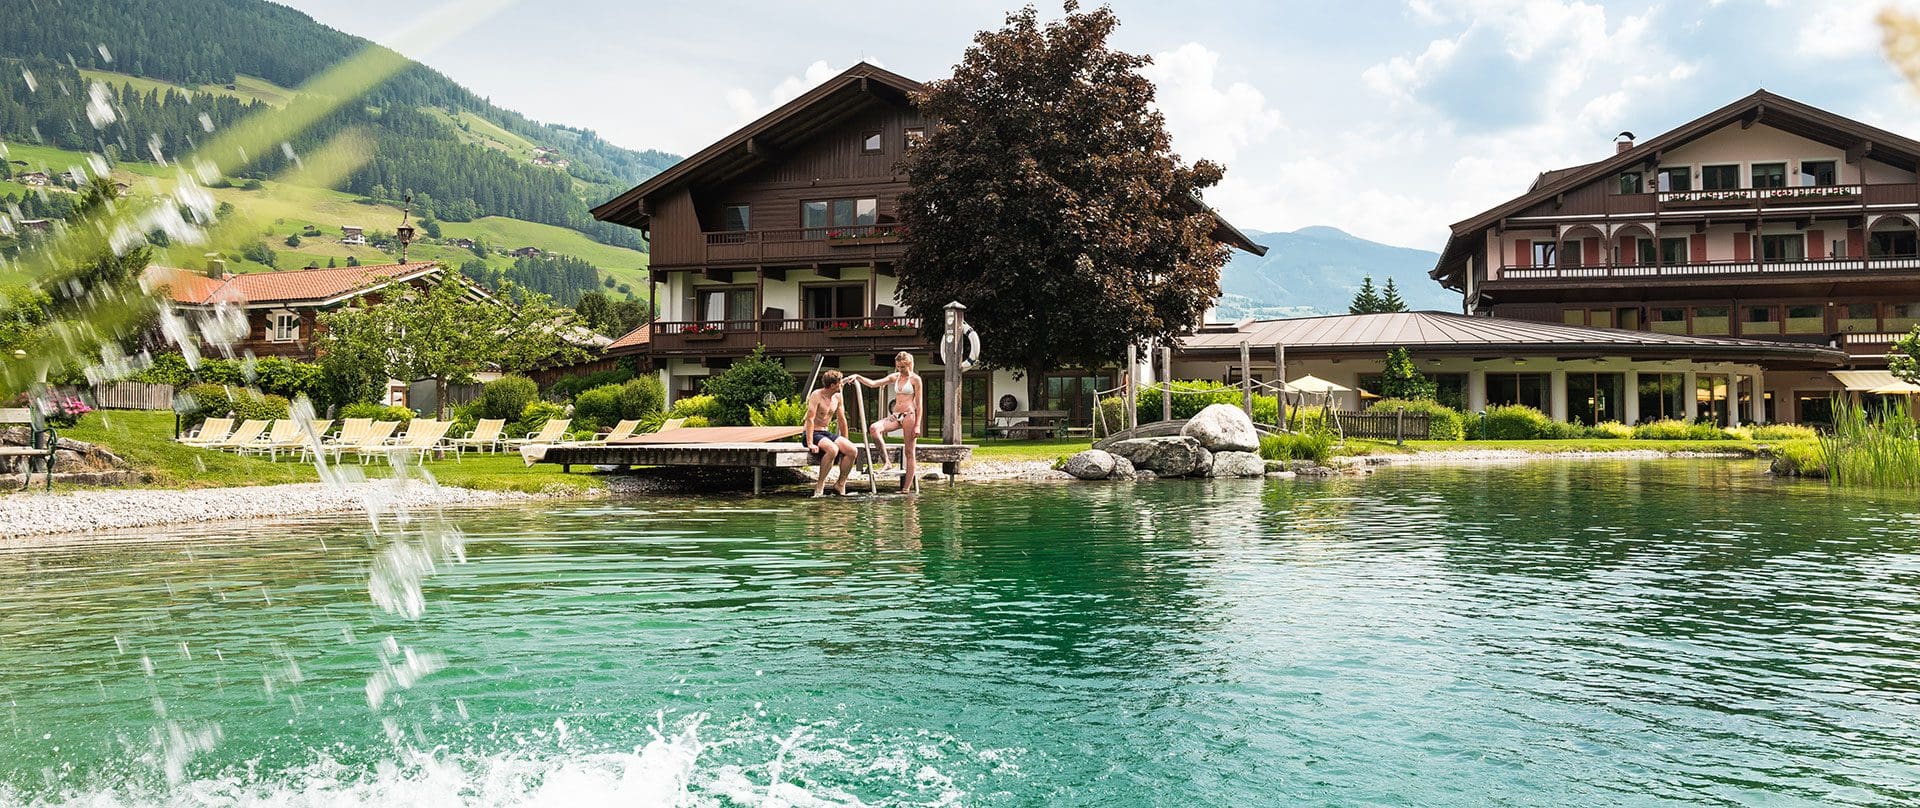 Hotel mit Badesee in Österreich